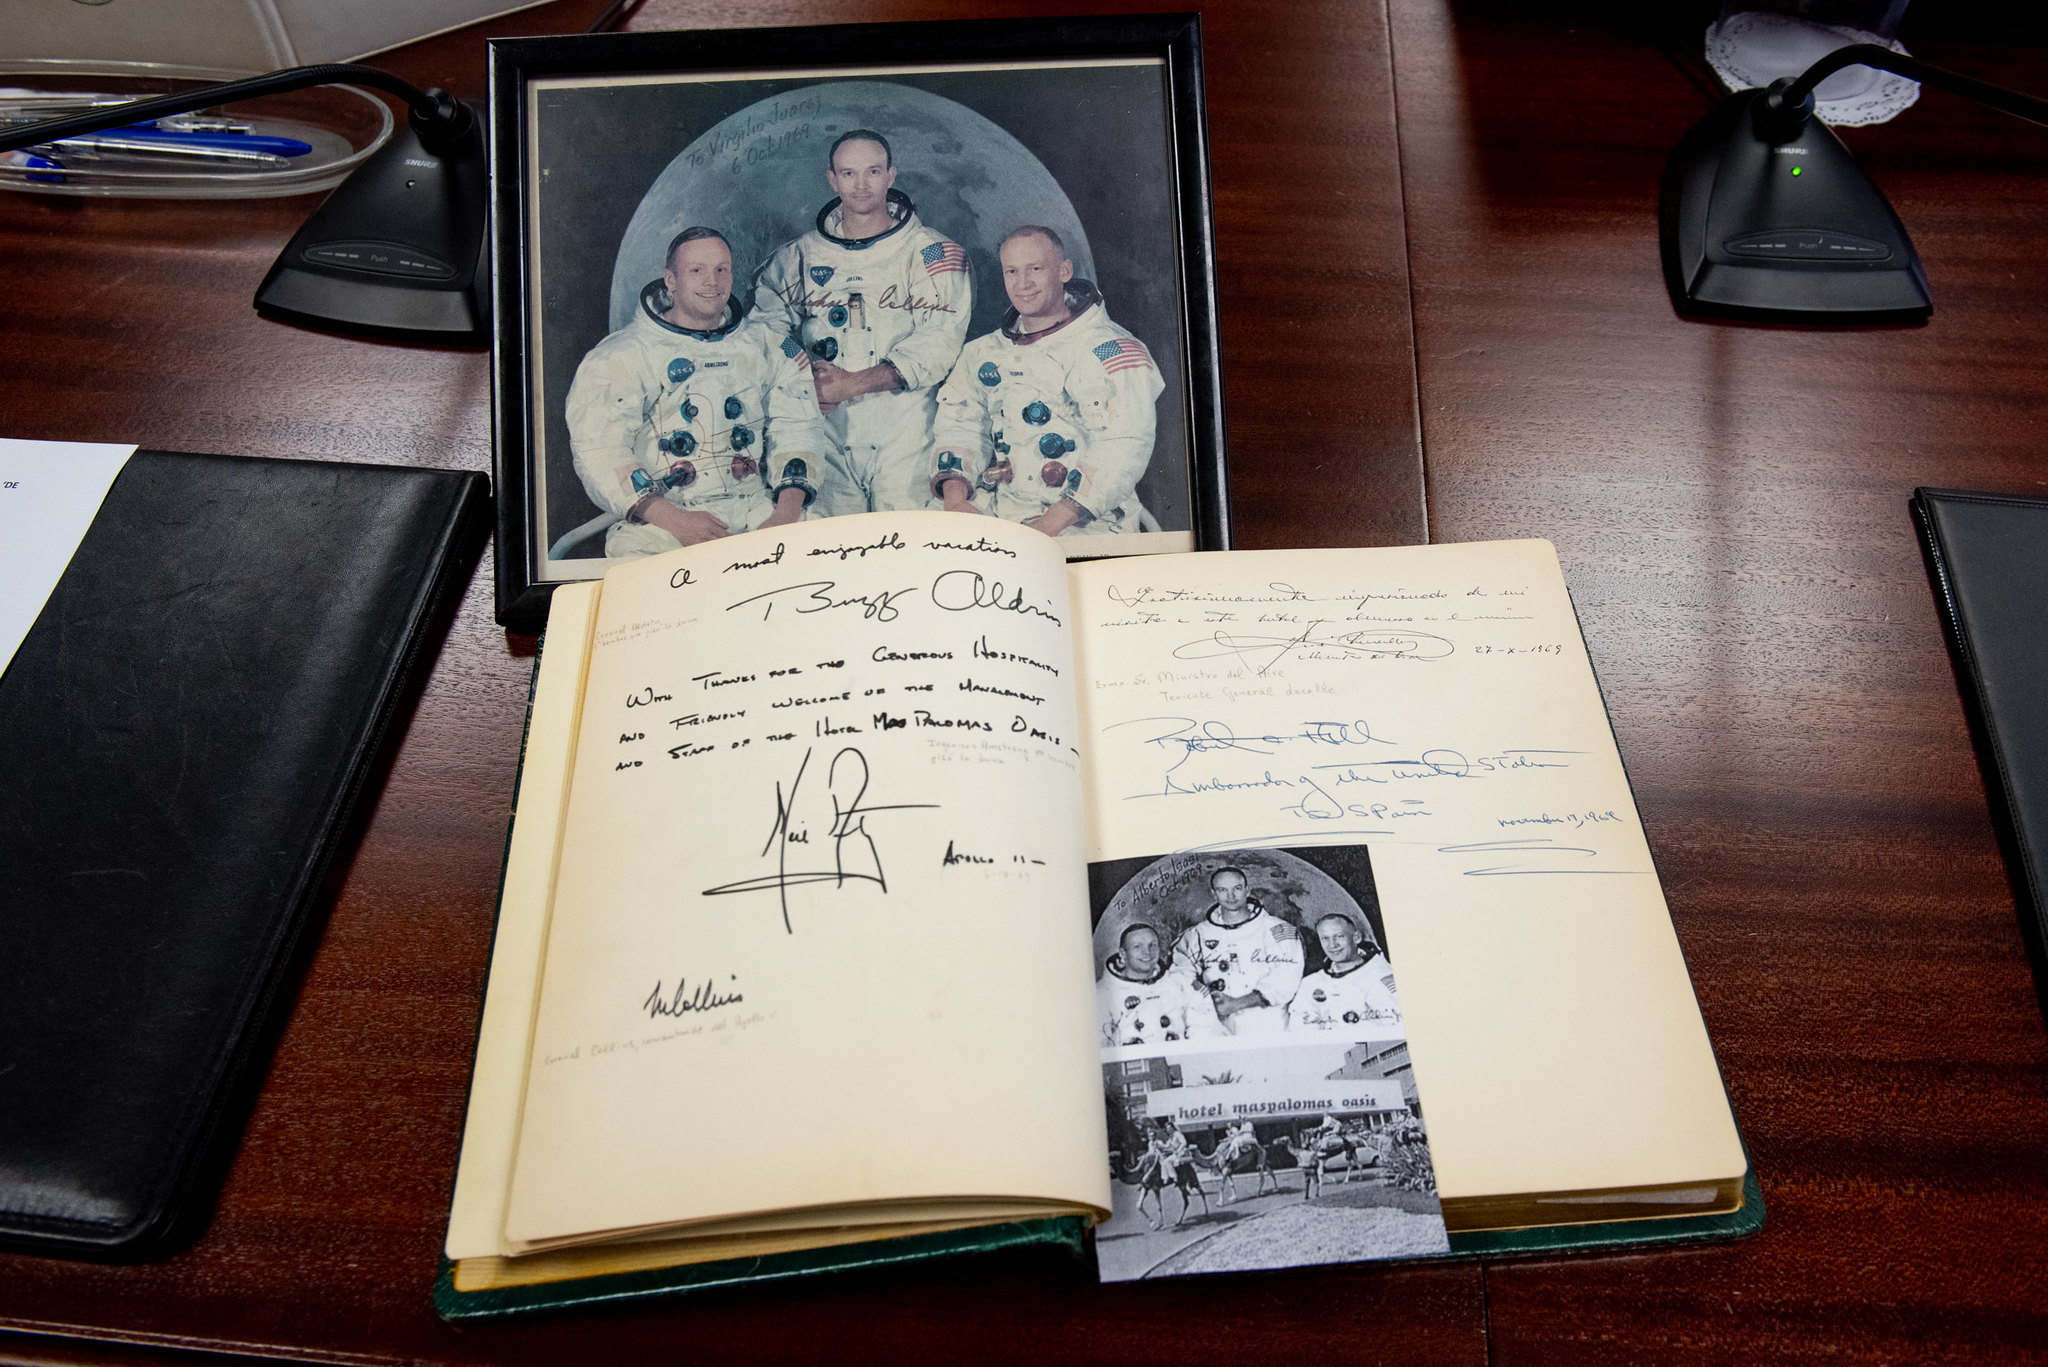 Piezas de la NASA, firmas originales de Armstrong, Aldrin y Collins y fotos inéditas serán expuestas para conmemorar los 50 años de su visita a Gran Canaria